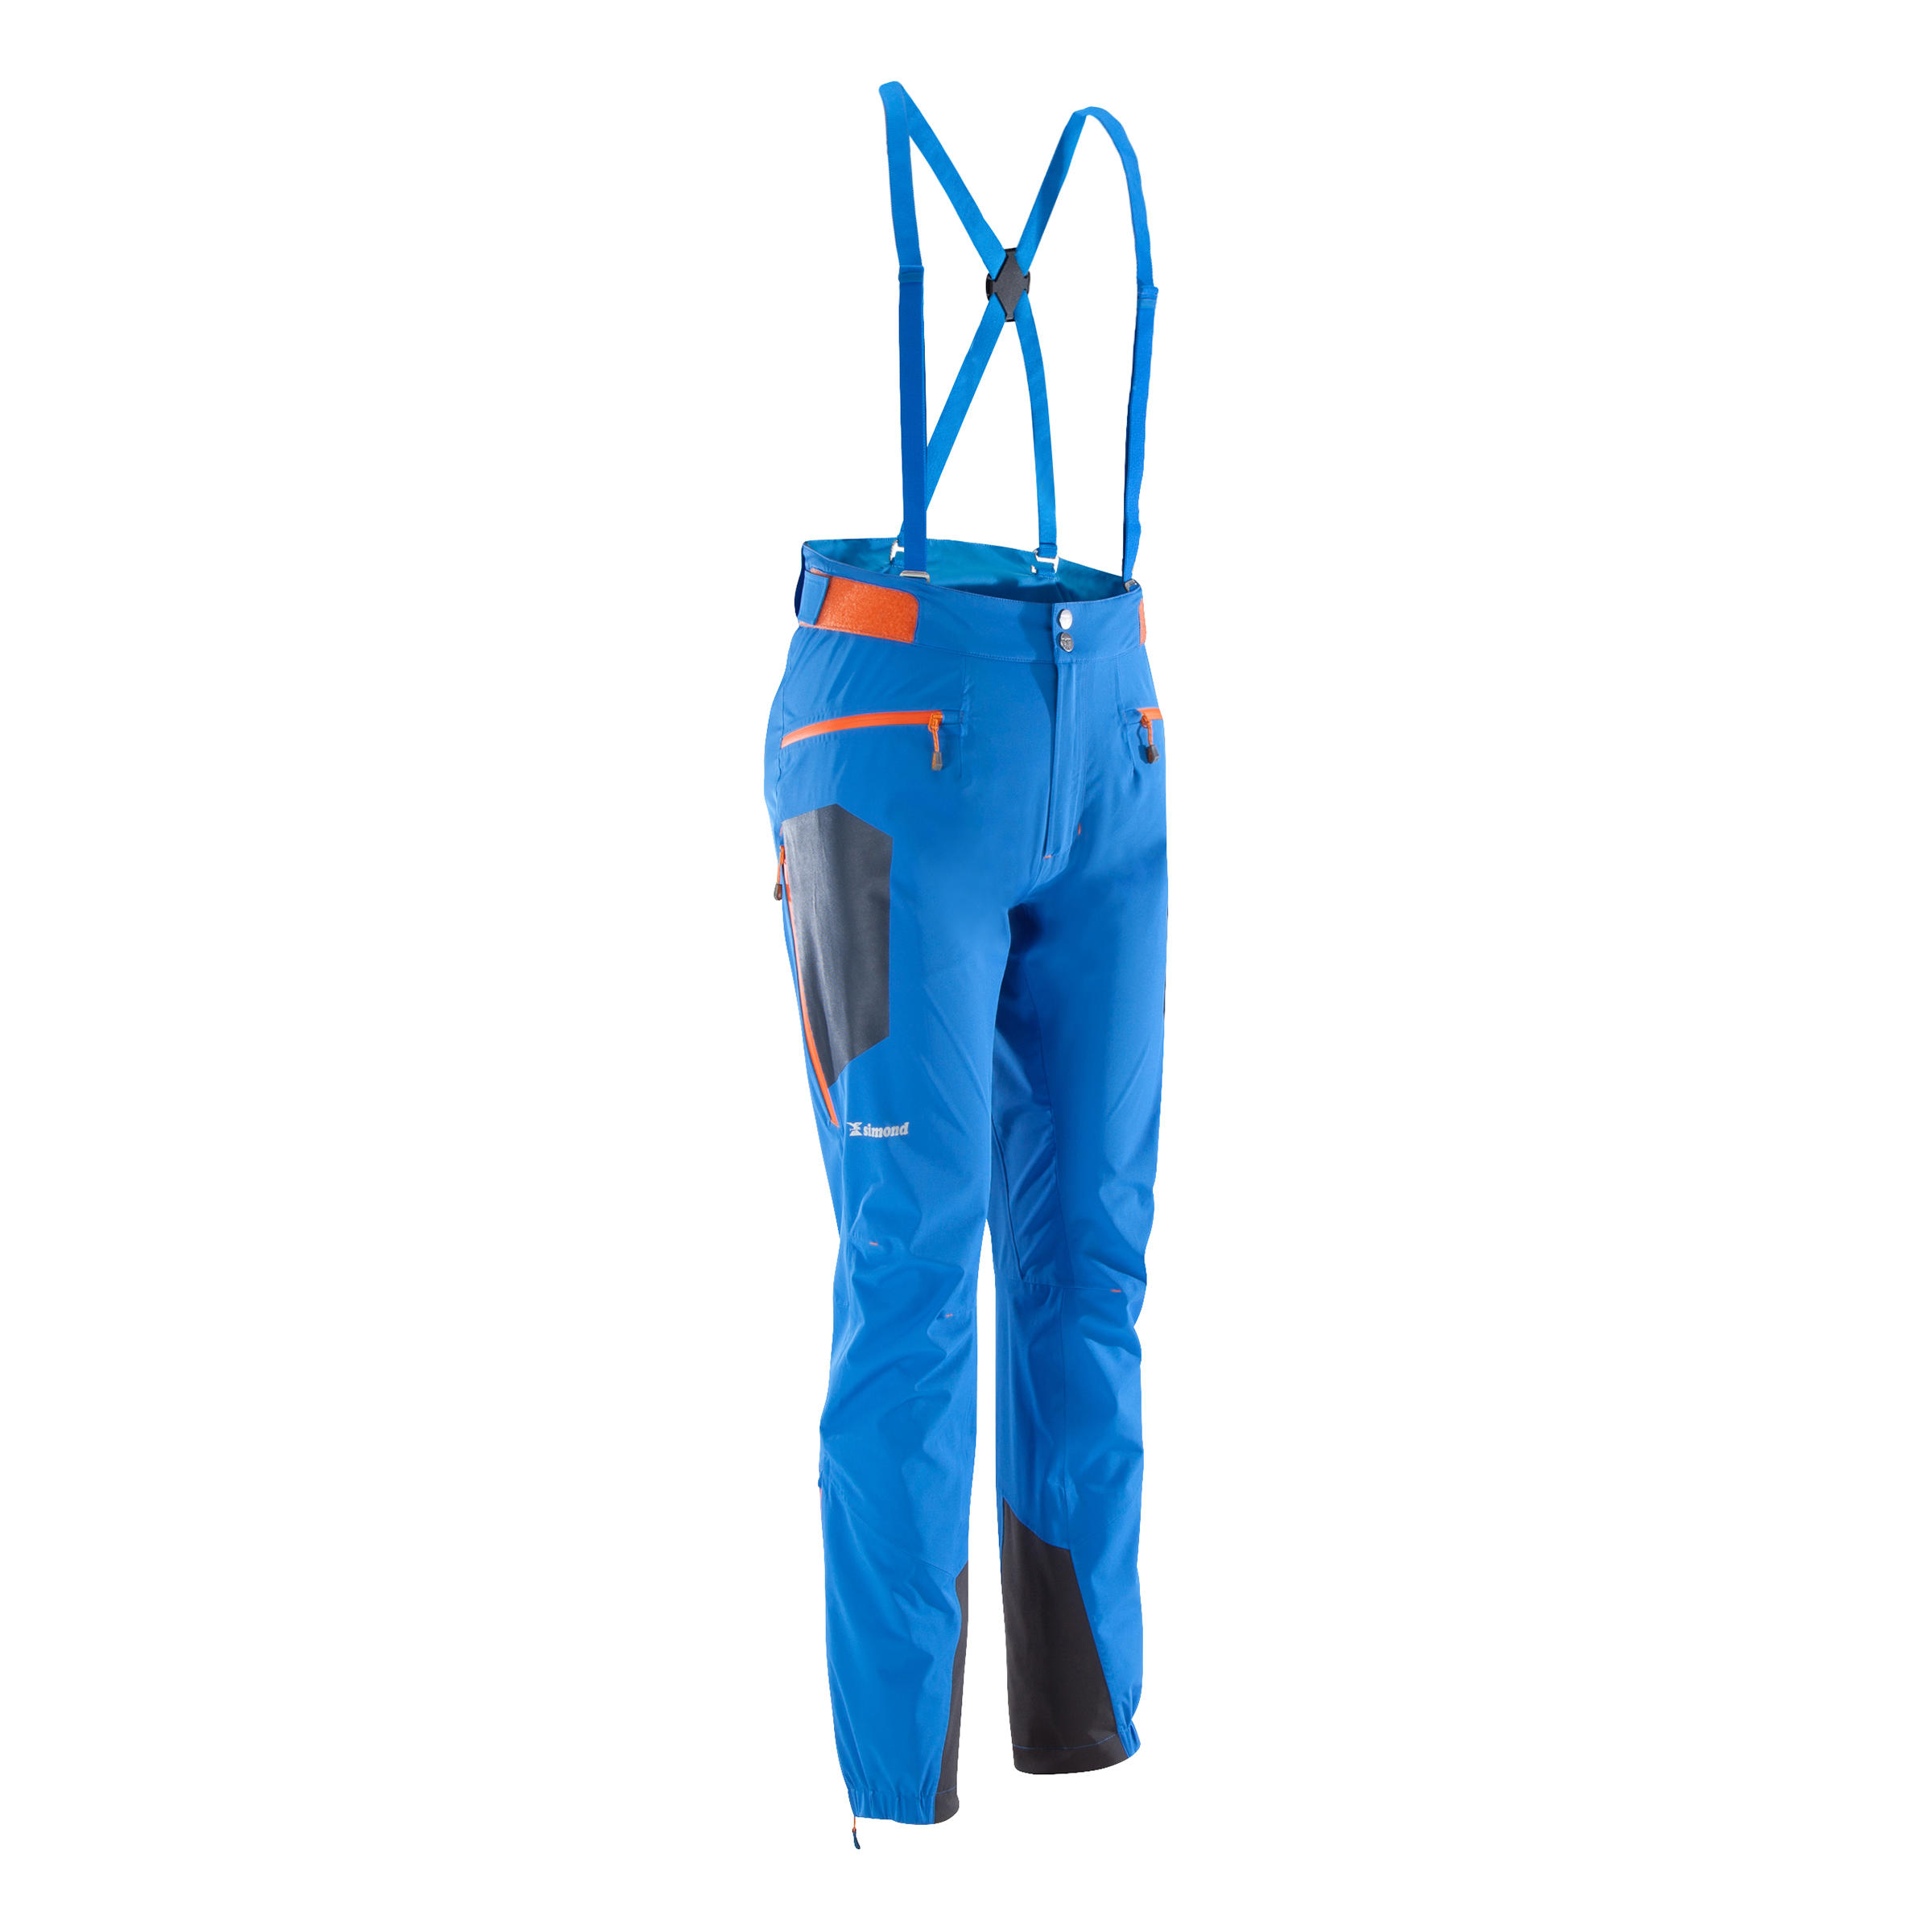 Pantalon impermeabil Cascade 2 Albastru Bărbați La Oferta Online decathlon imagine La Oferta Online